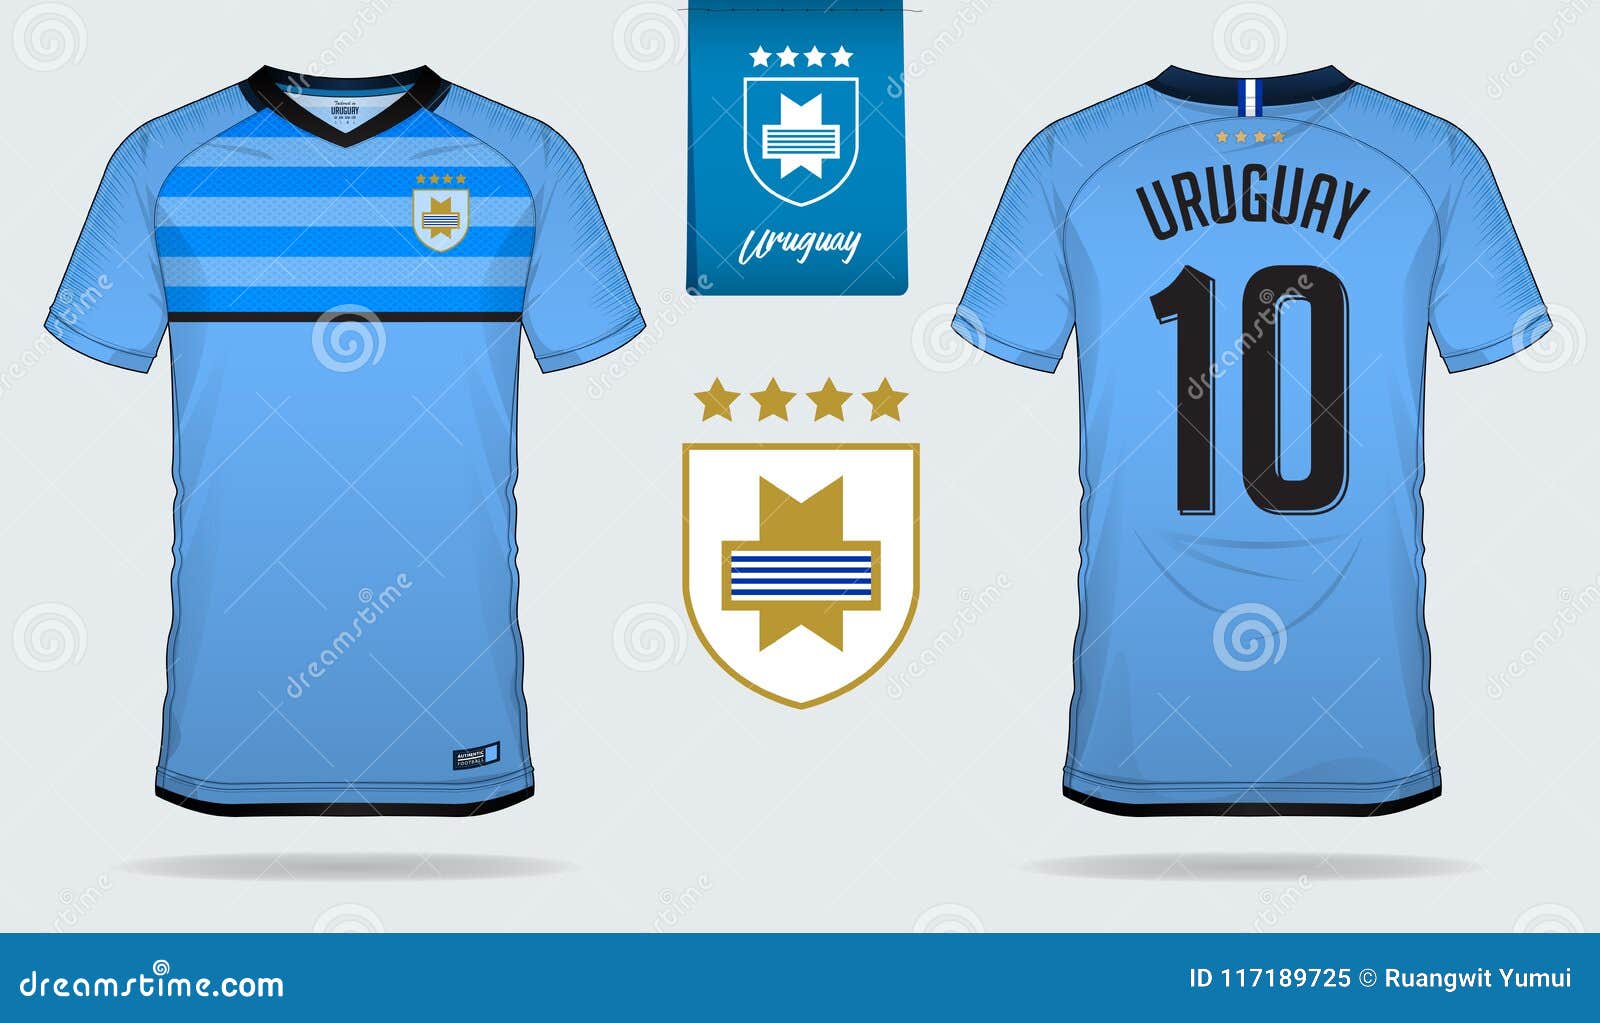 Camiseta uruguay estrellas